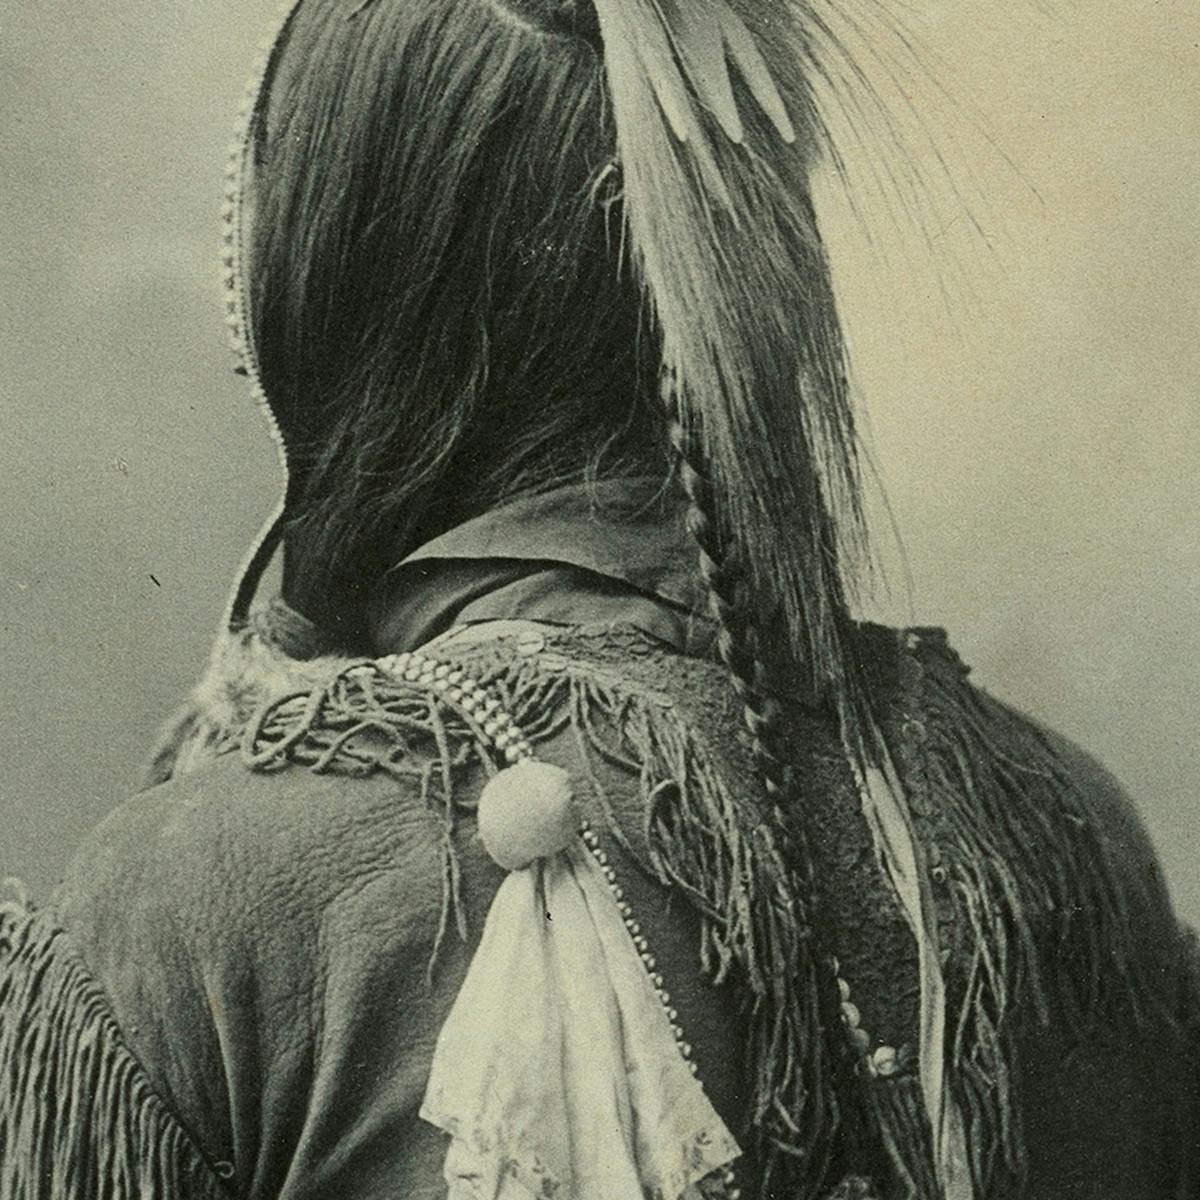 Dance bonnet and scalplock of an Omaha Indian